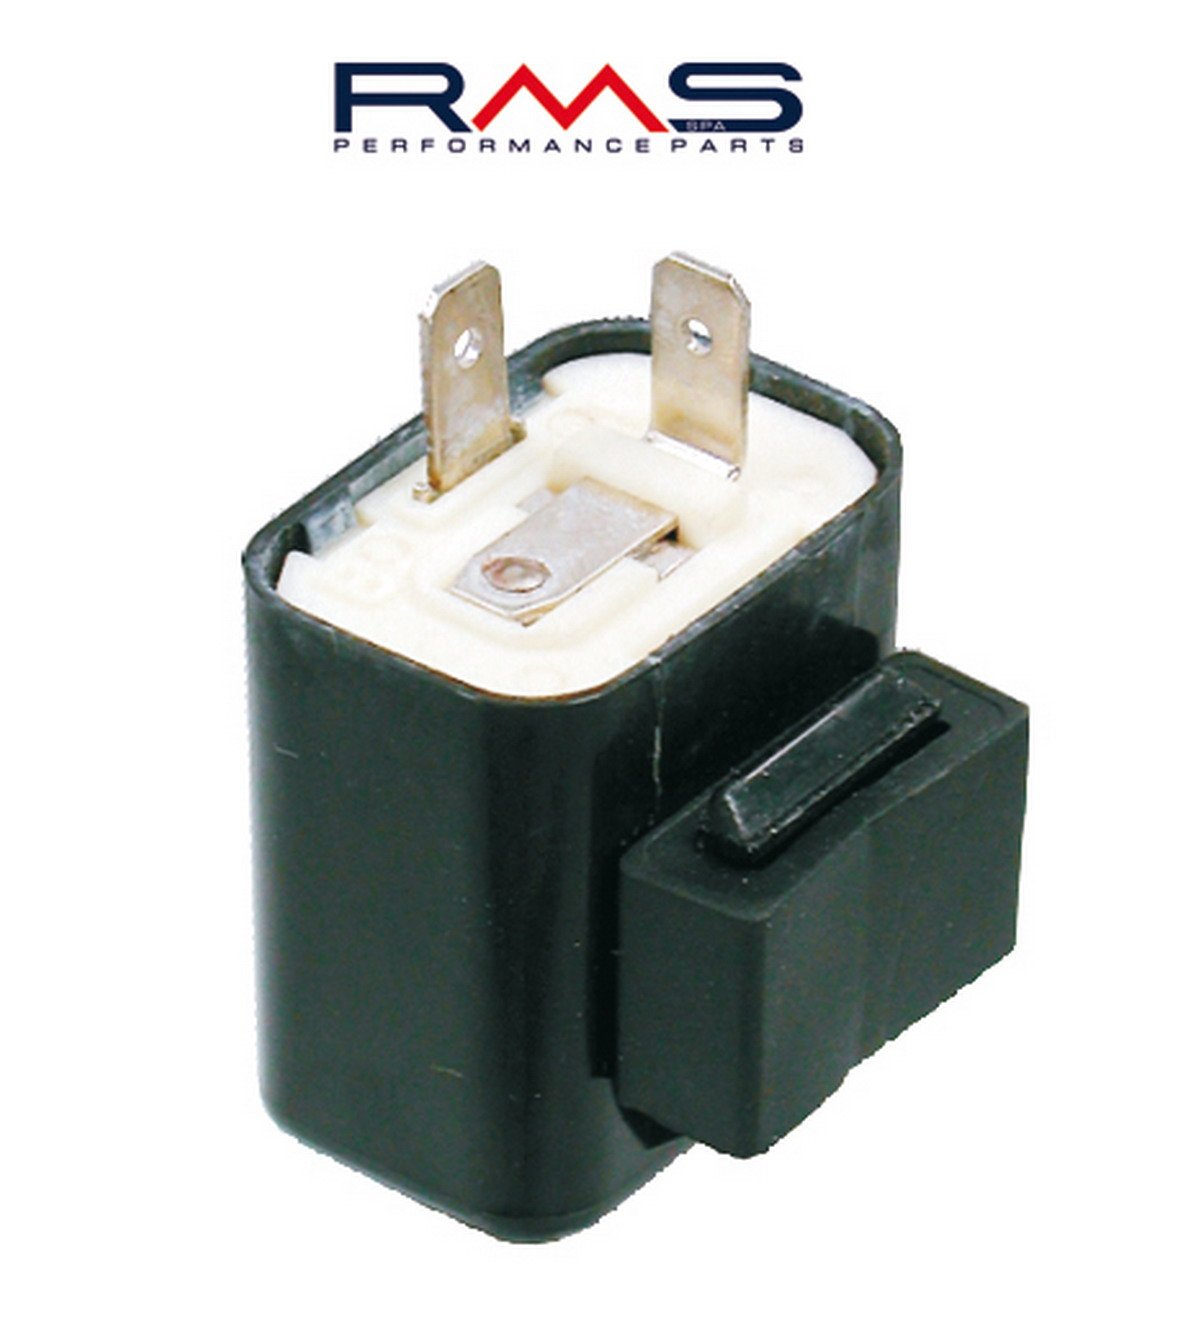 Obrázek produktu Přerušovač blinkrů RMS 246120030